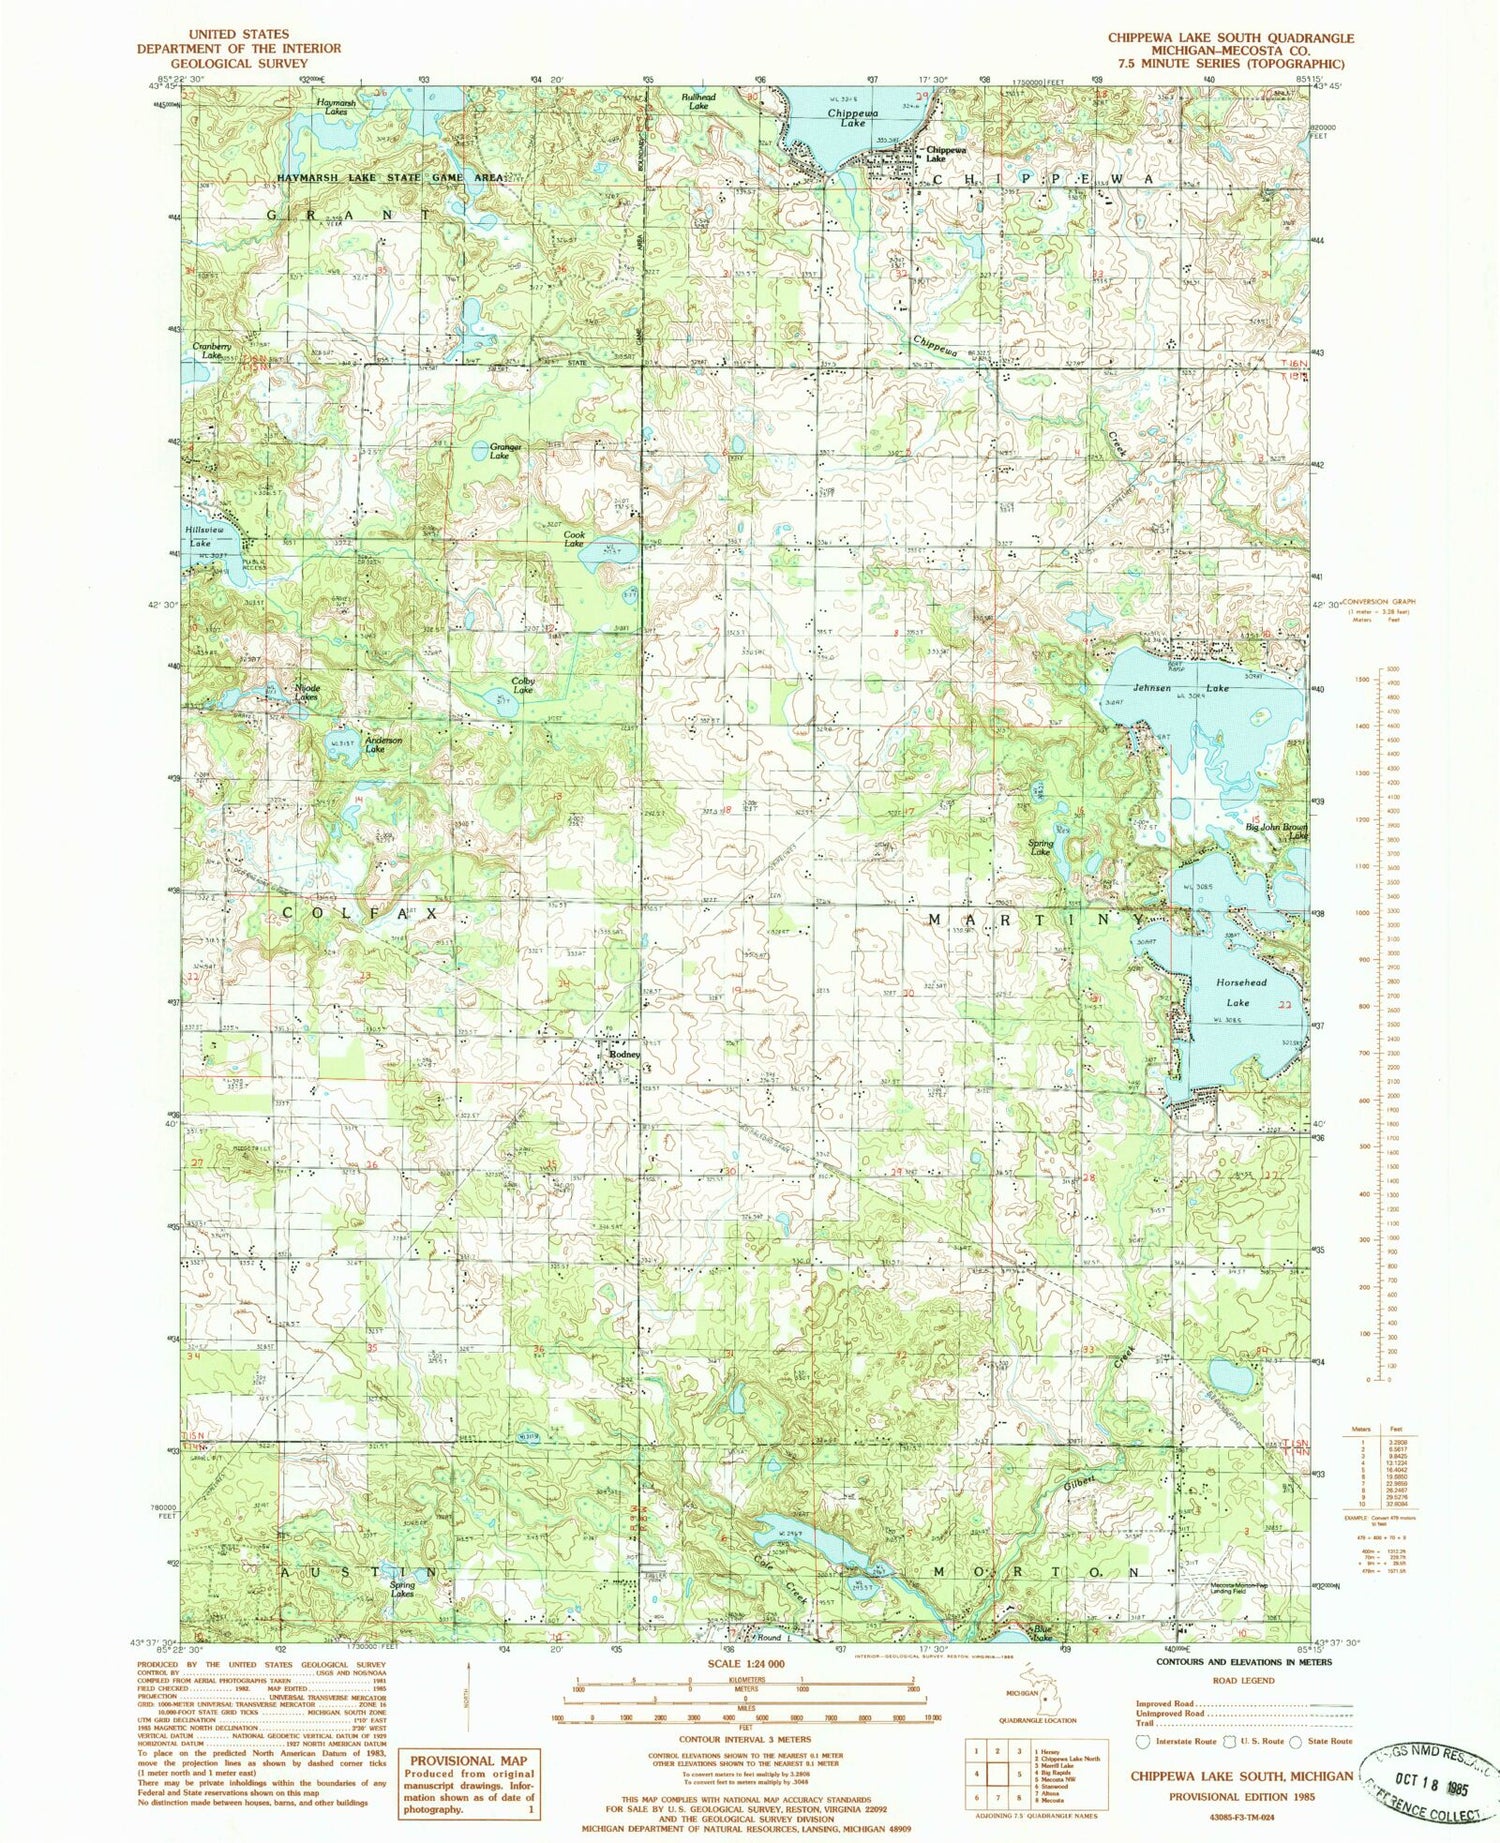 Classic USGS Chippewa Lake South Michigan 7.5'x7.5' Topo Map Image